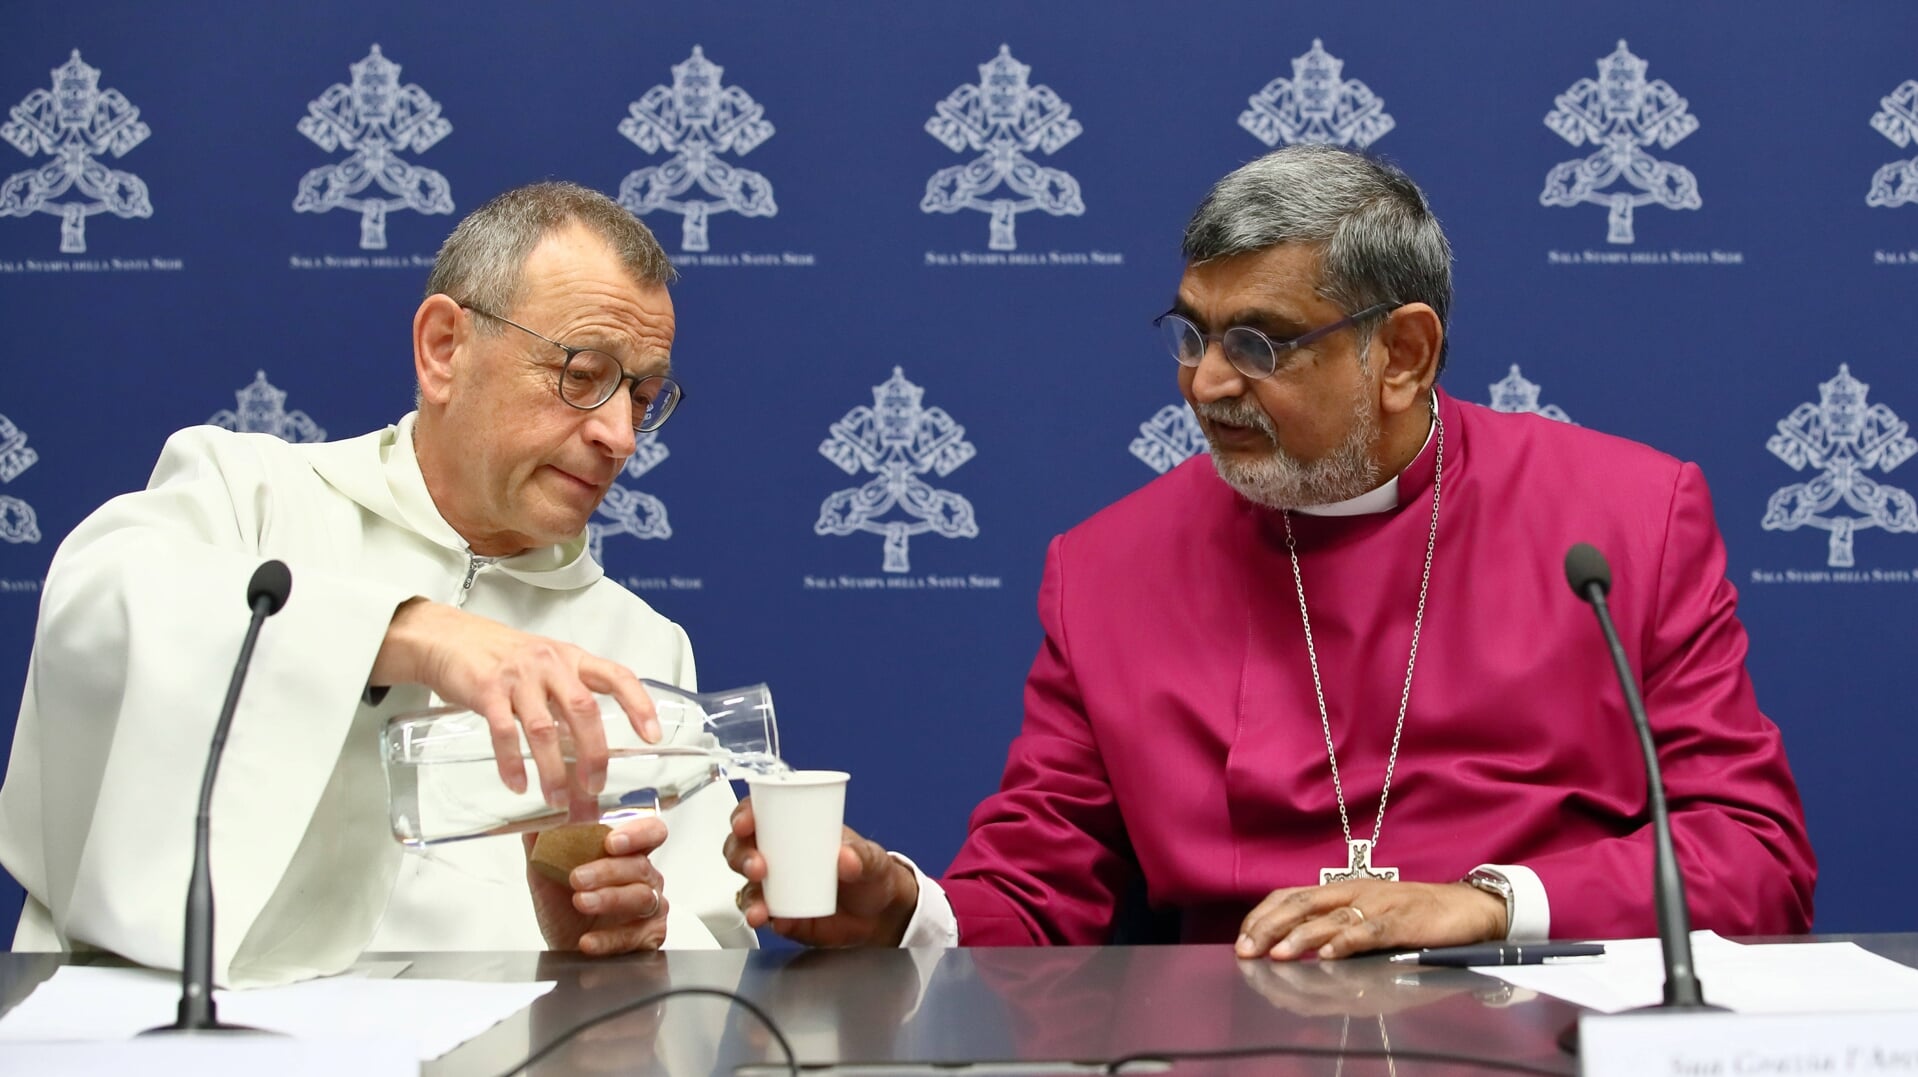 Broeder Alois, de prior van de oecumenische gemeenschap van Taizé (links), met de afgevaardigde van de Anglicaanse Kerk bij het Vaticaan, aartsbisschop Ian Ernest, tijdens de persconferentie in Rome.